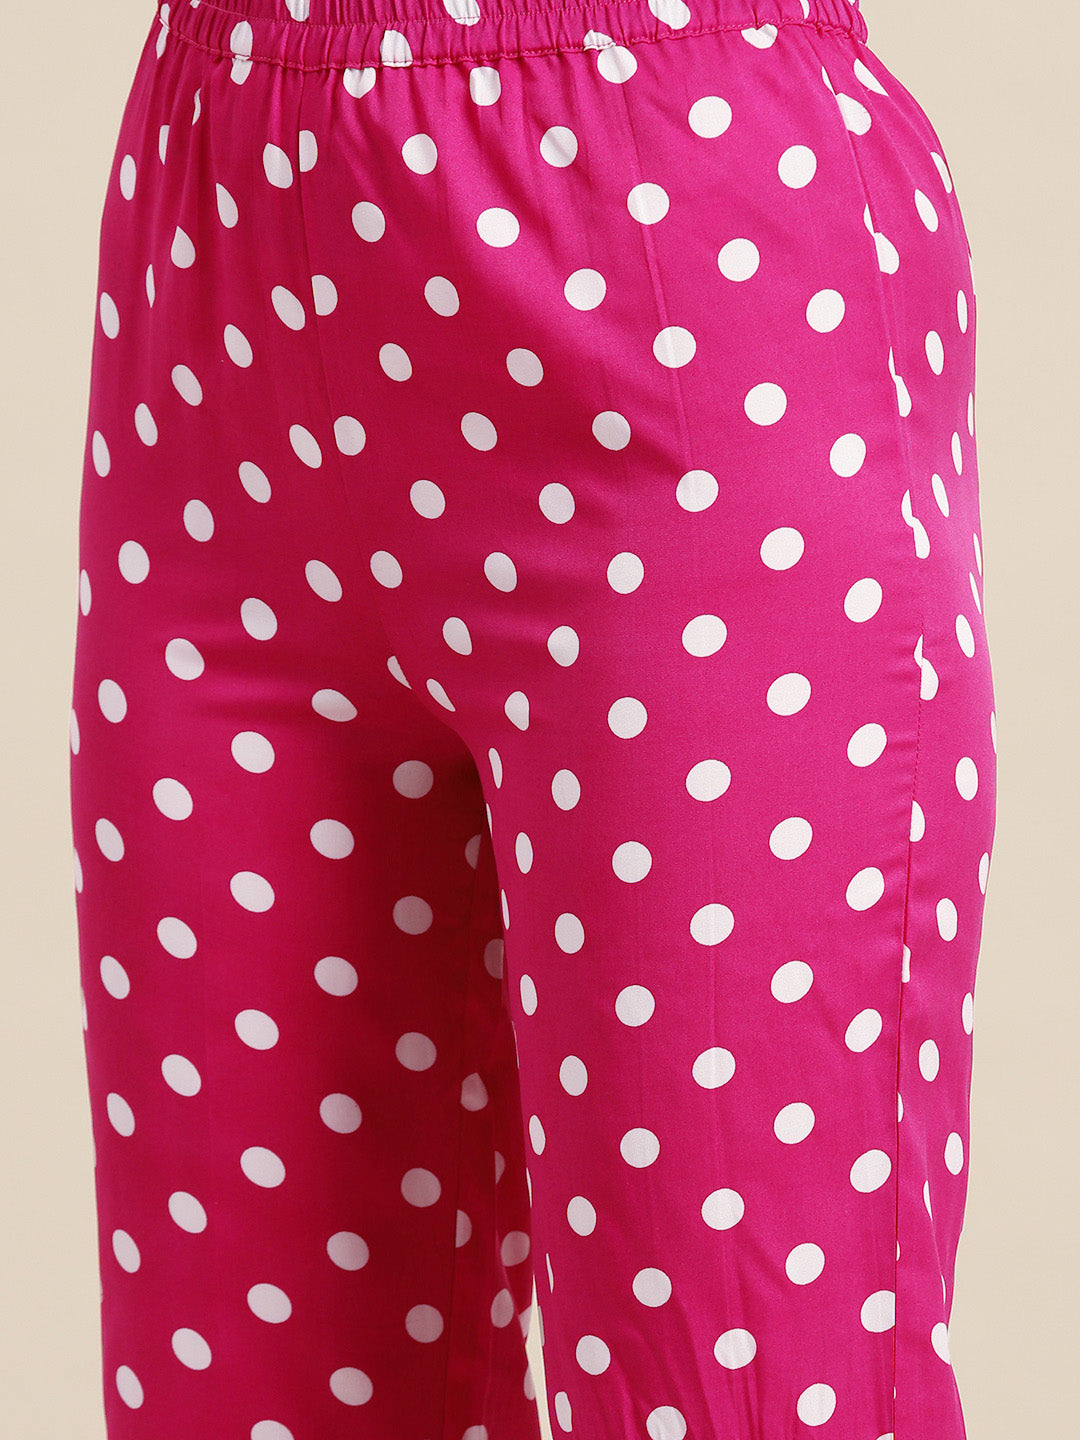 Hot pink & white polka crepe shirt and pant set